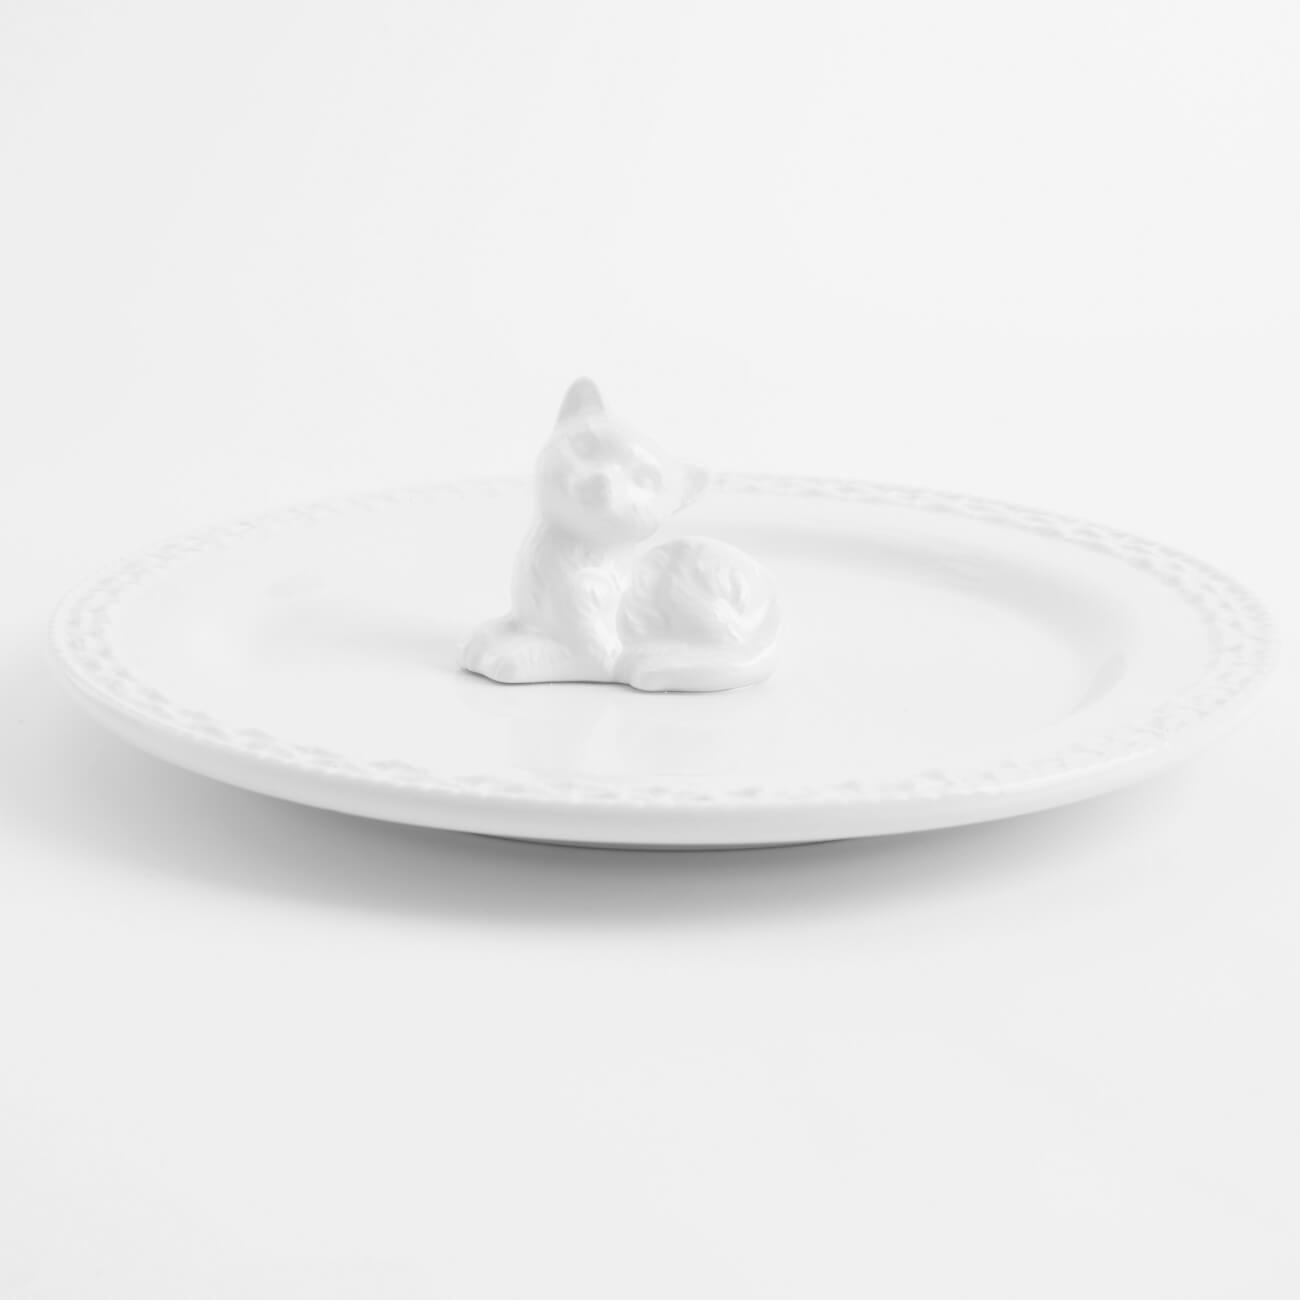 Блюдо, 20 см, керамика, белое, Кот, Kitten блюдо керамика 23х12х4 см астра lefard 264 1021